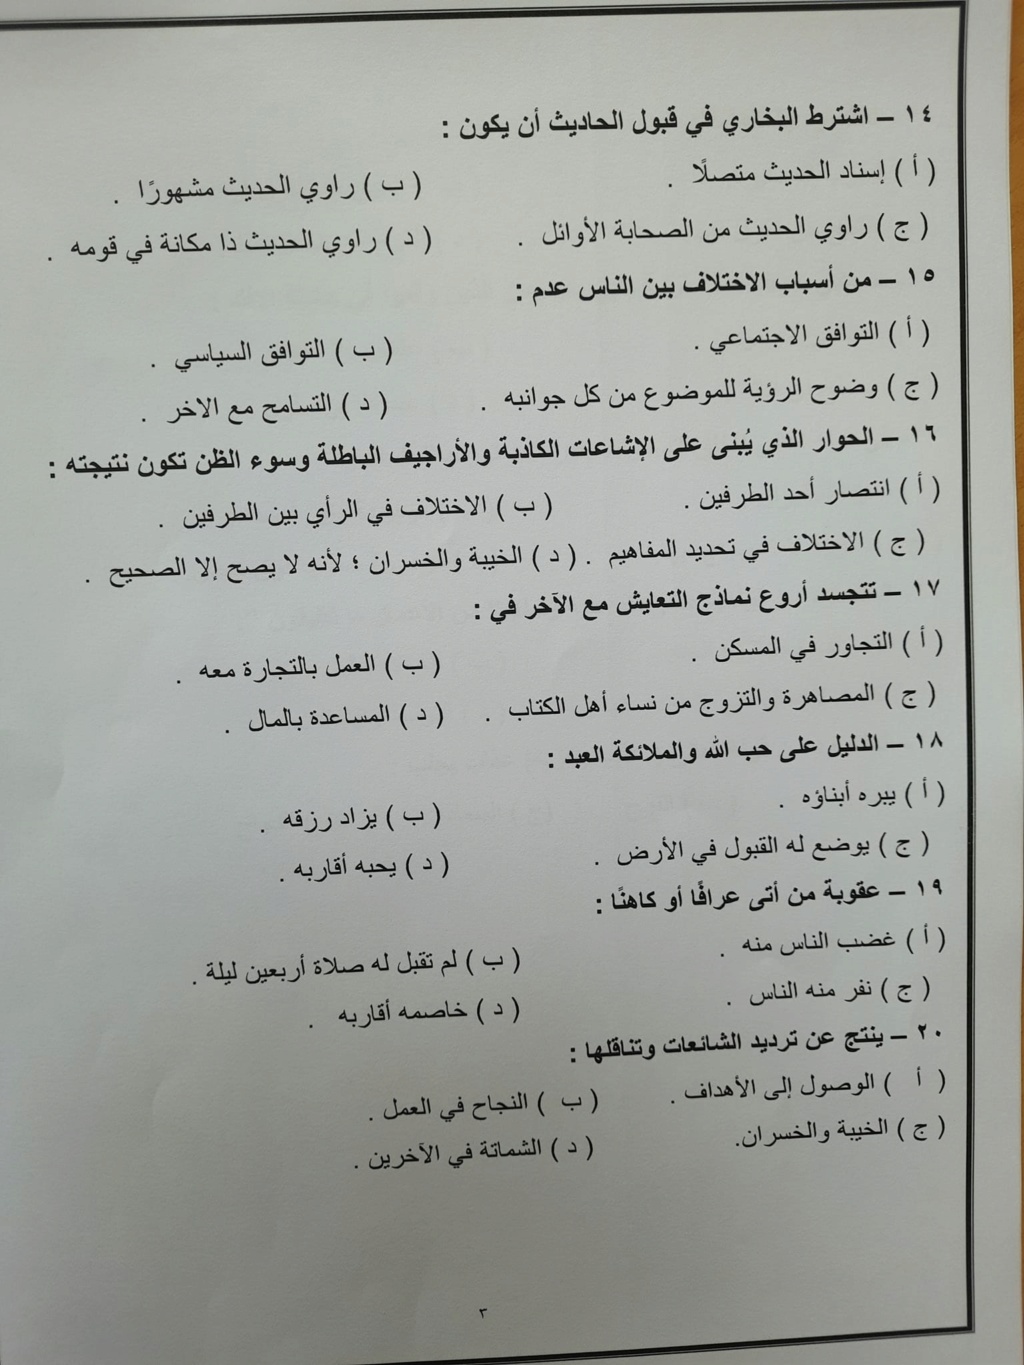 مراجعة التربية الإسلامية للصف الثالث الثانوي أ. عبد القوي عبد العال 3102